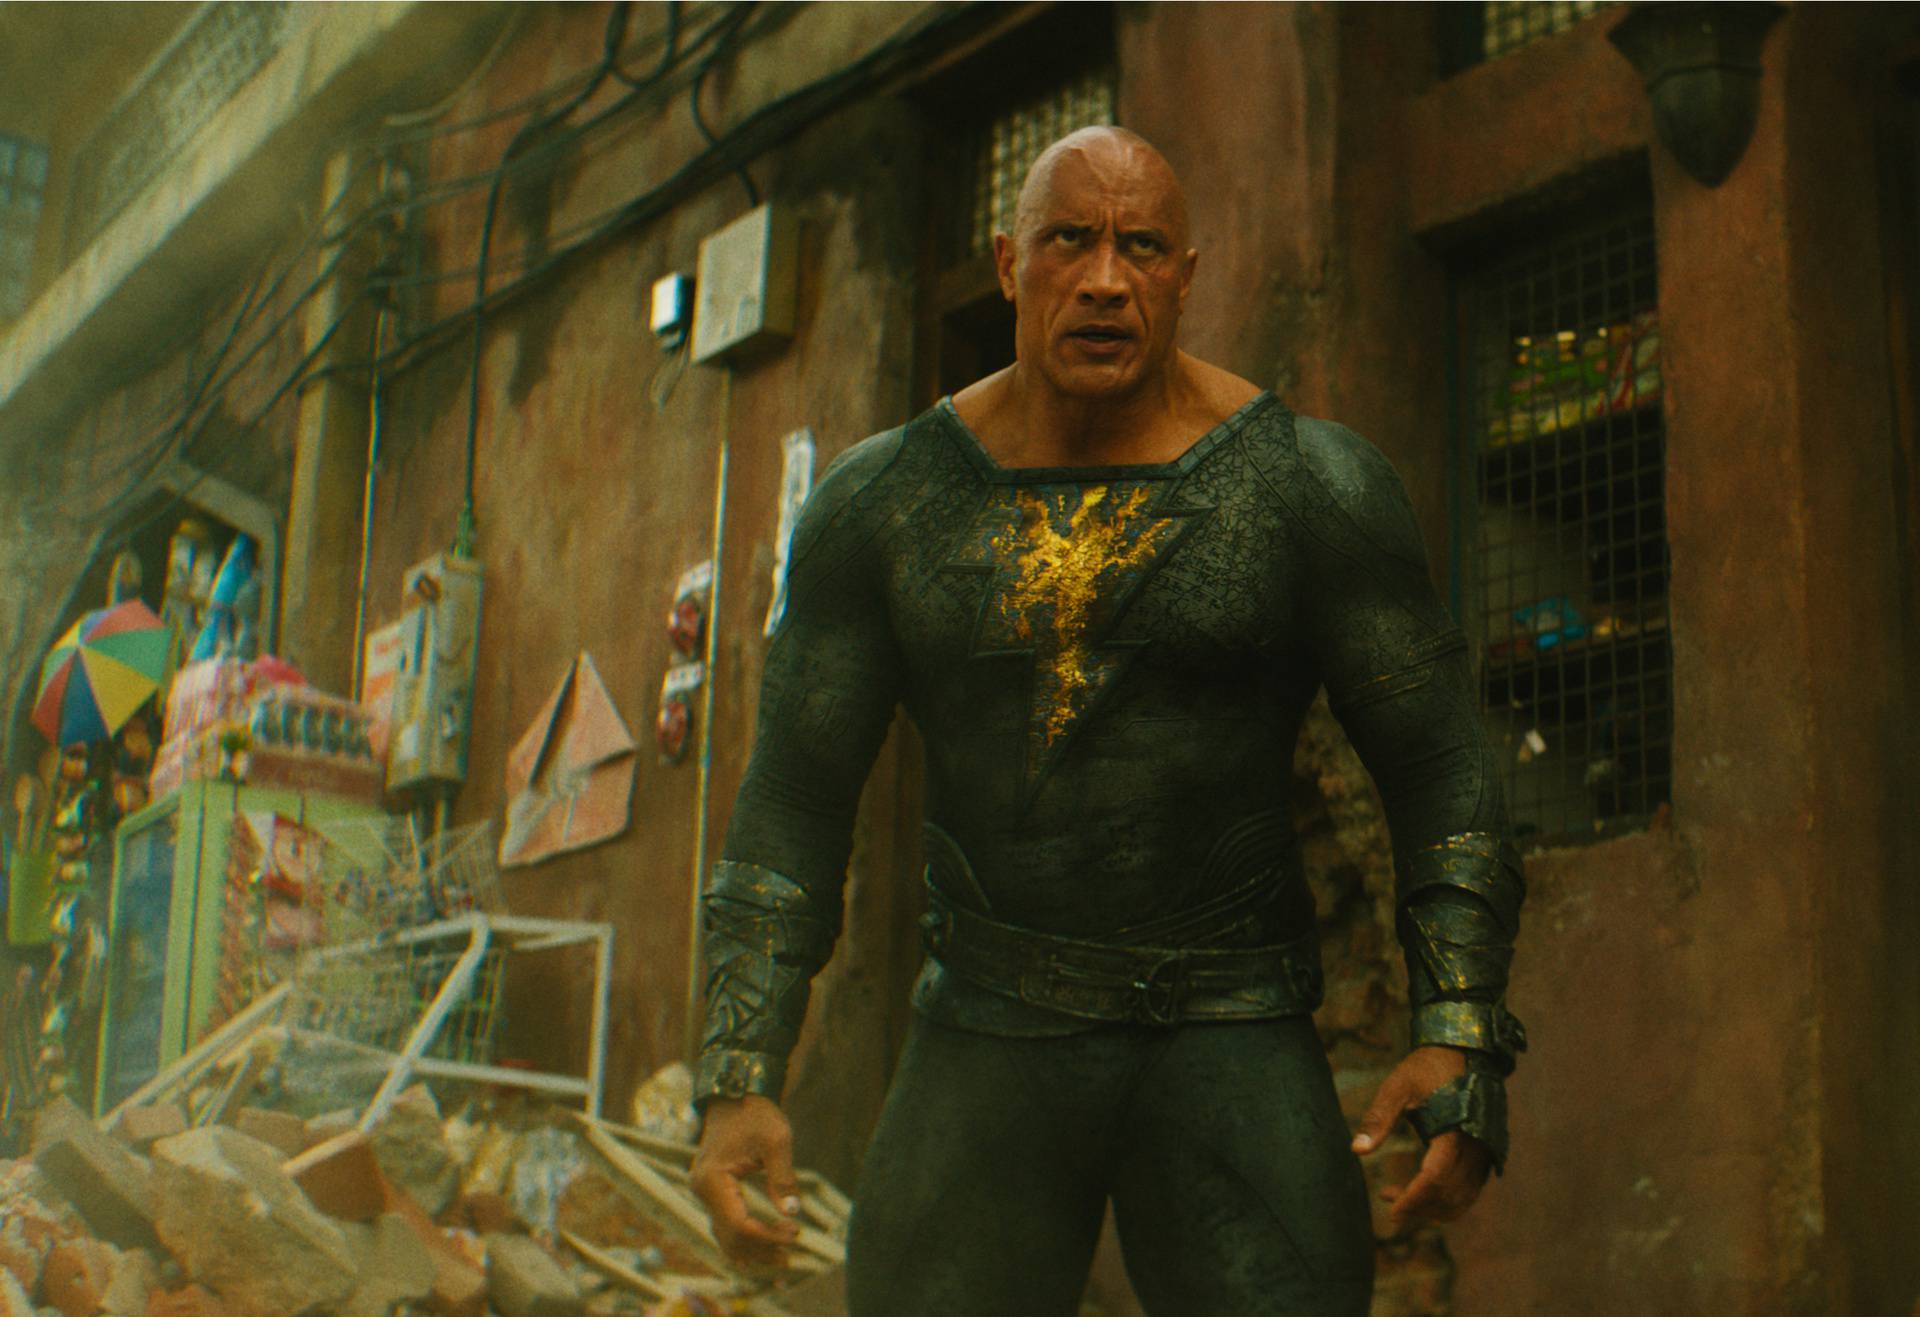 Dwayne ‘The Rock’ Johnson zvijezda je DC blockbustera koji je upravo stigao u naša kina